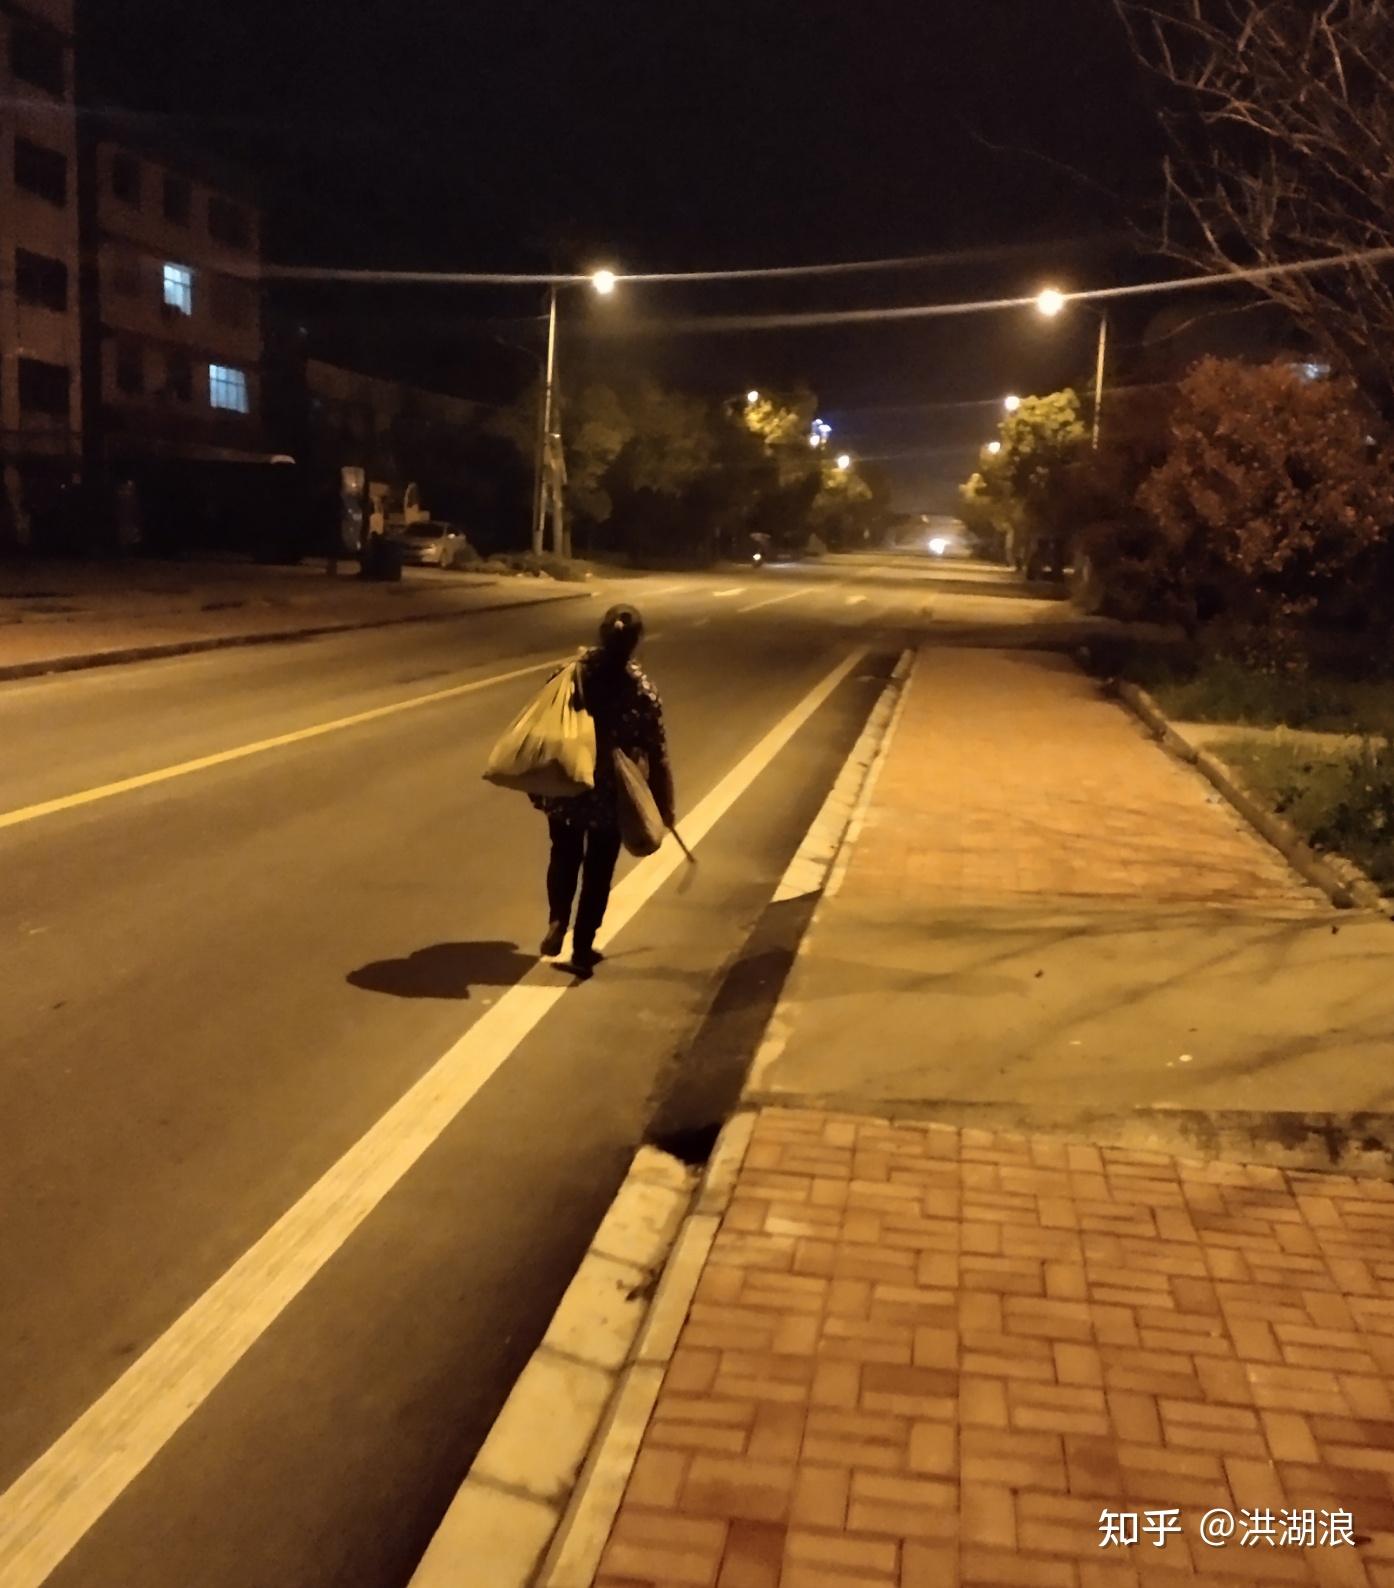 一个人夜晚路边的图片图片